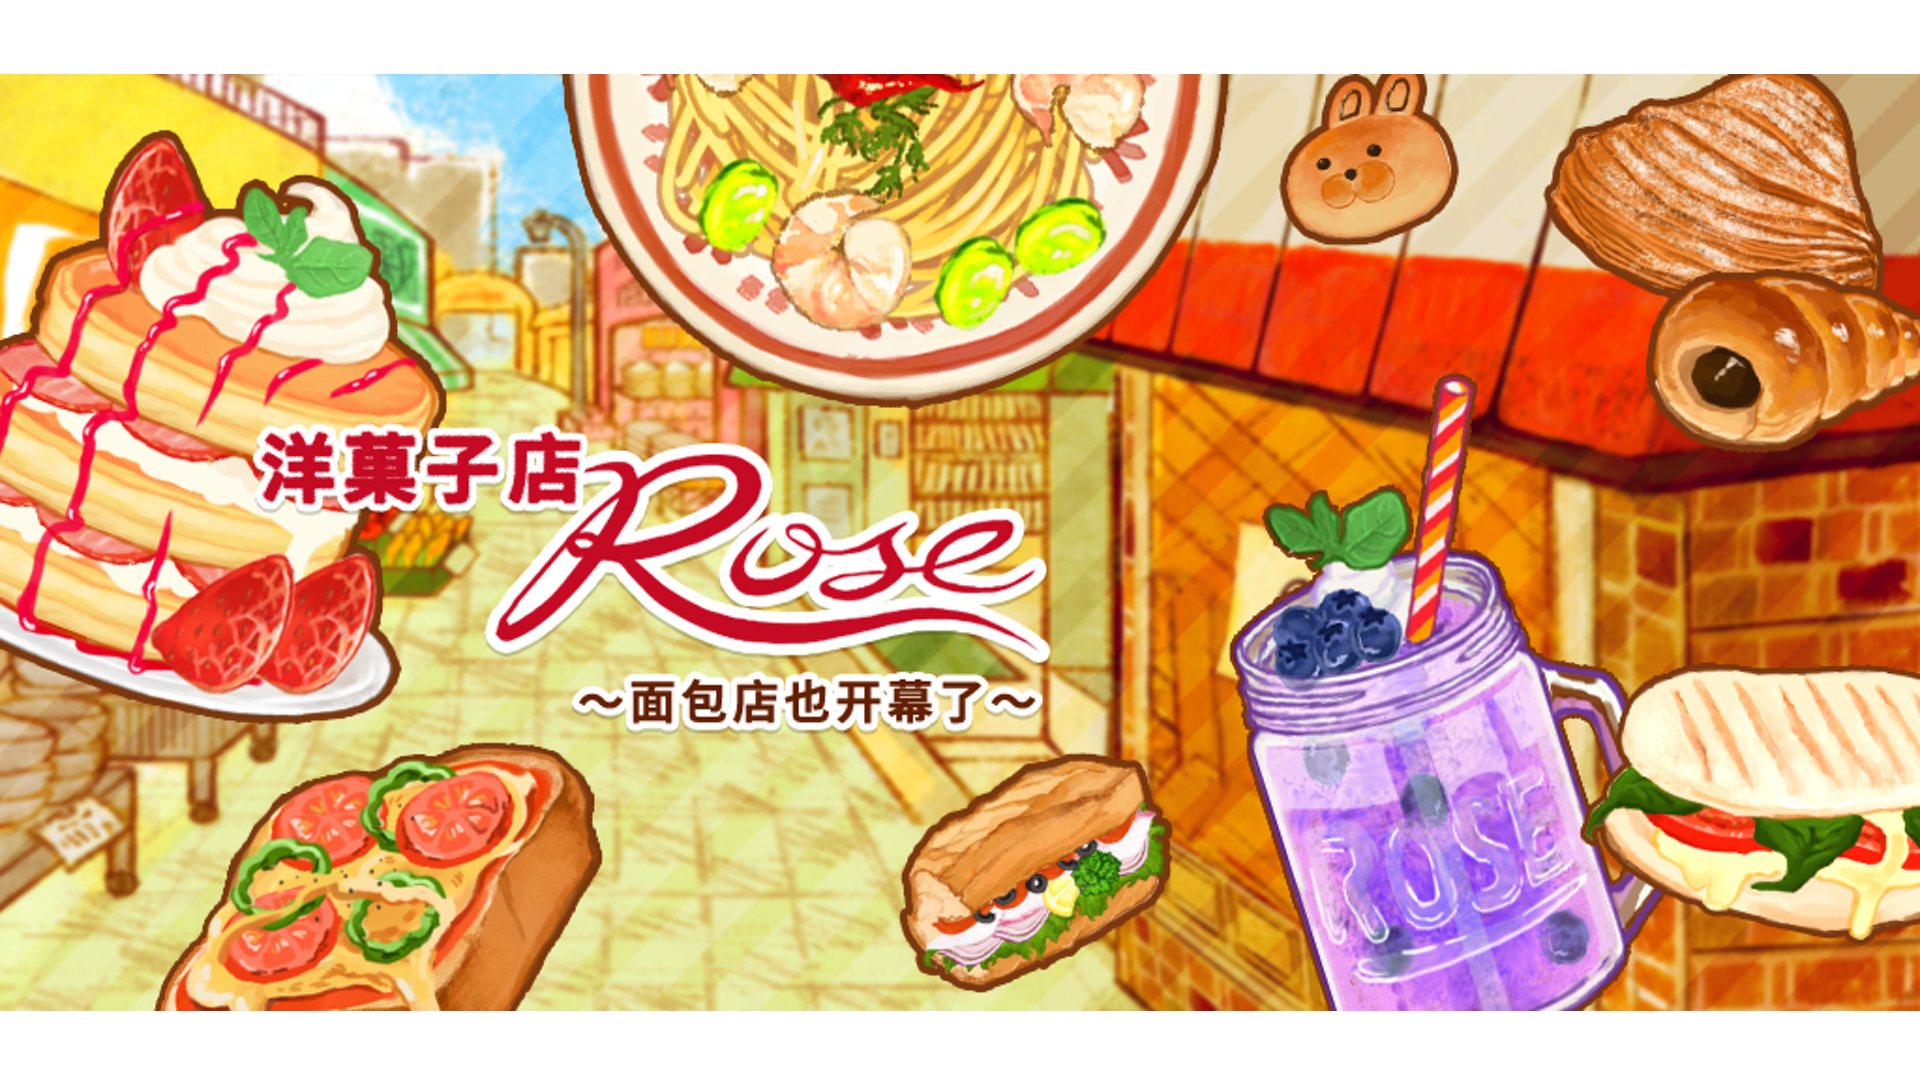 洋果子店rose食譜攻略 No.1405-1412